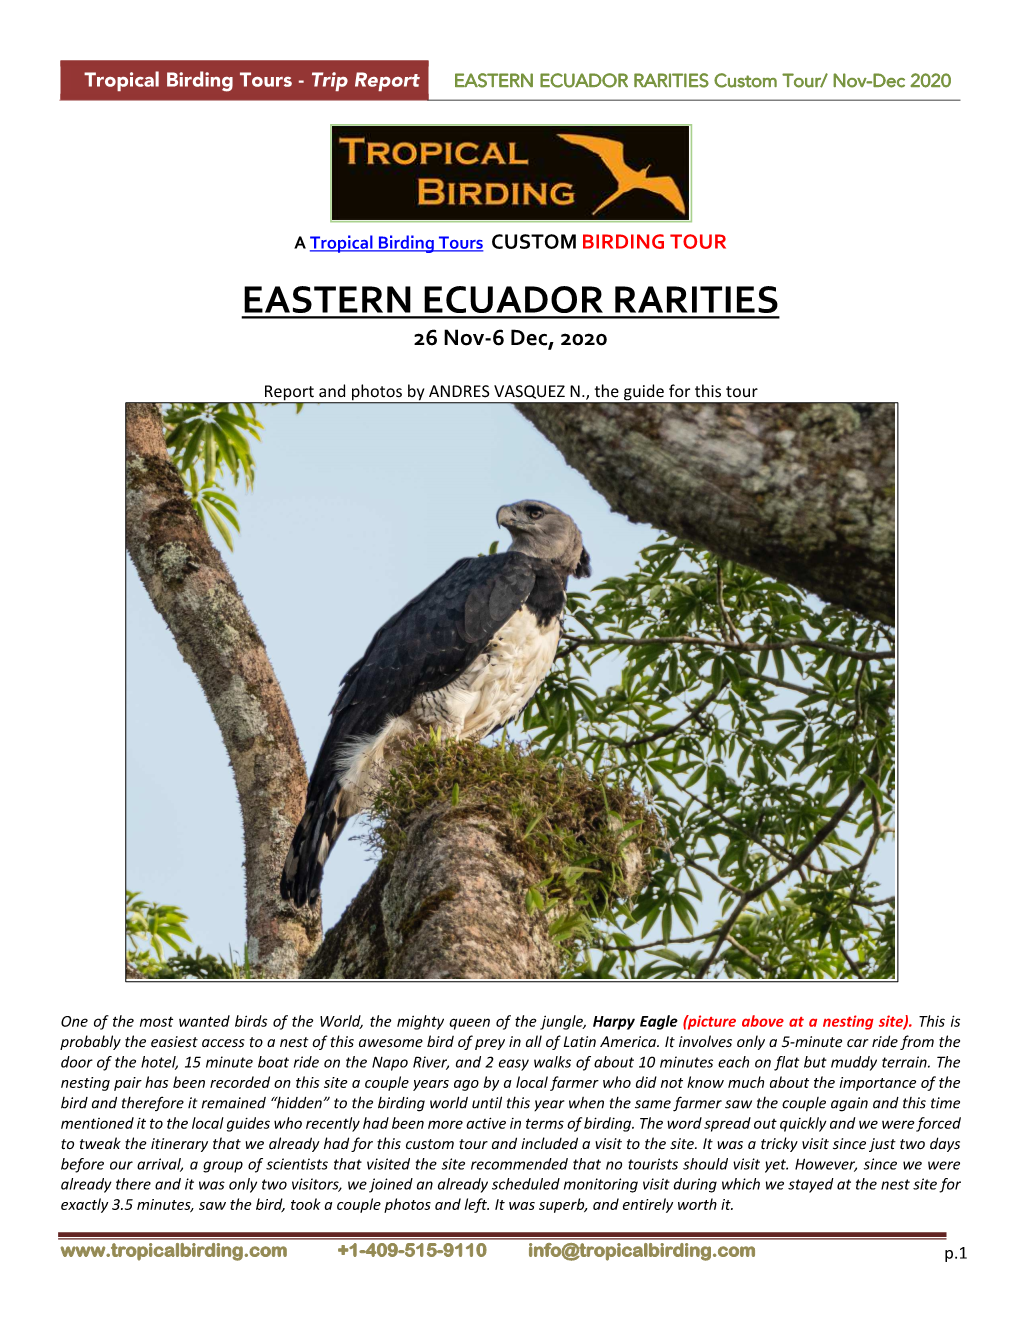 EASTERN ECUADOR RARITIES Custom Tour/ Nov-Dec 2020